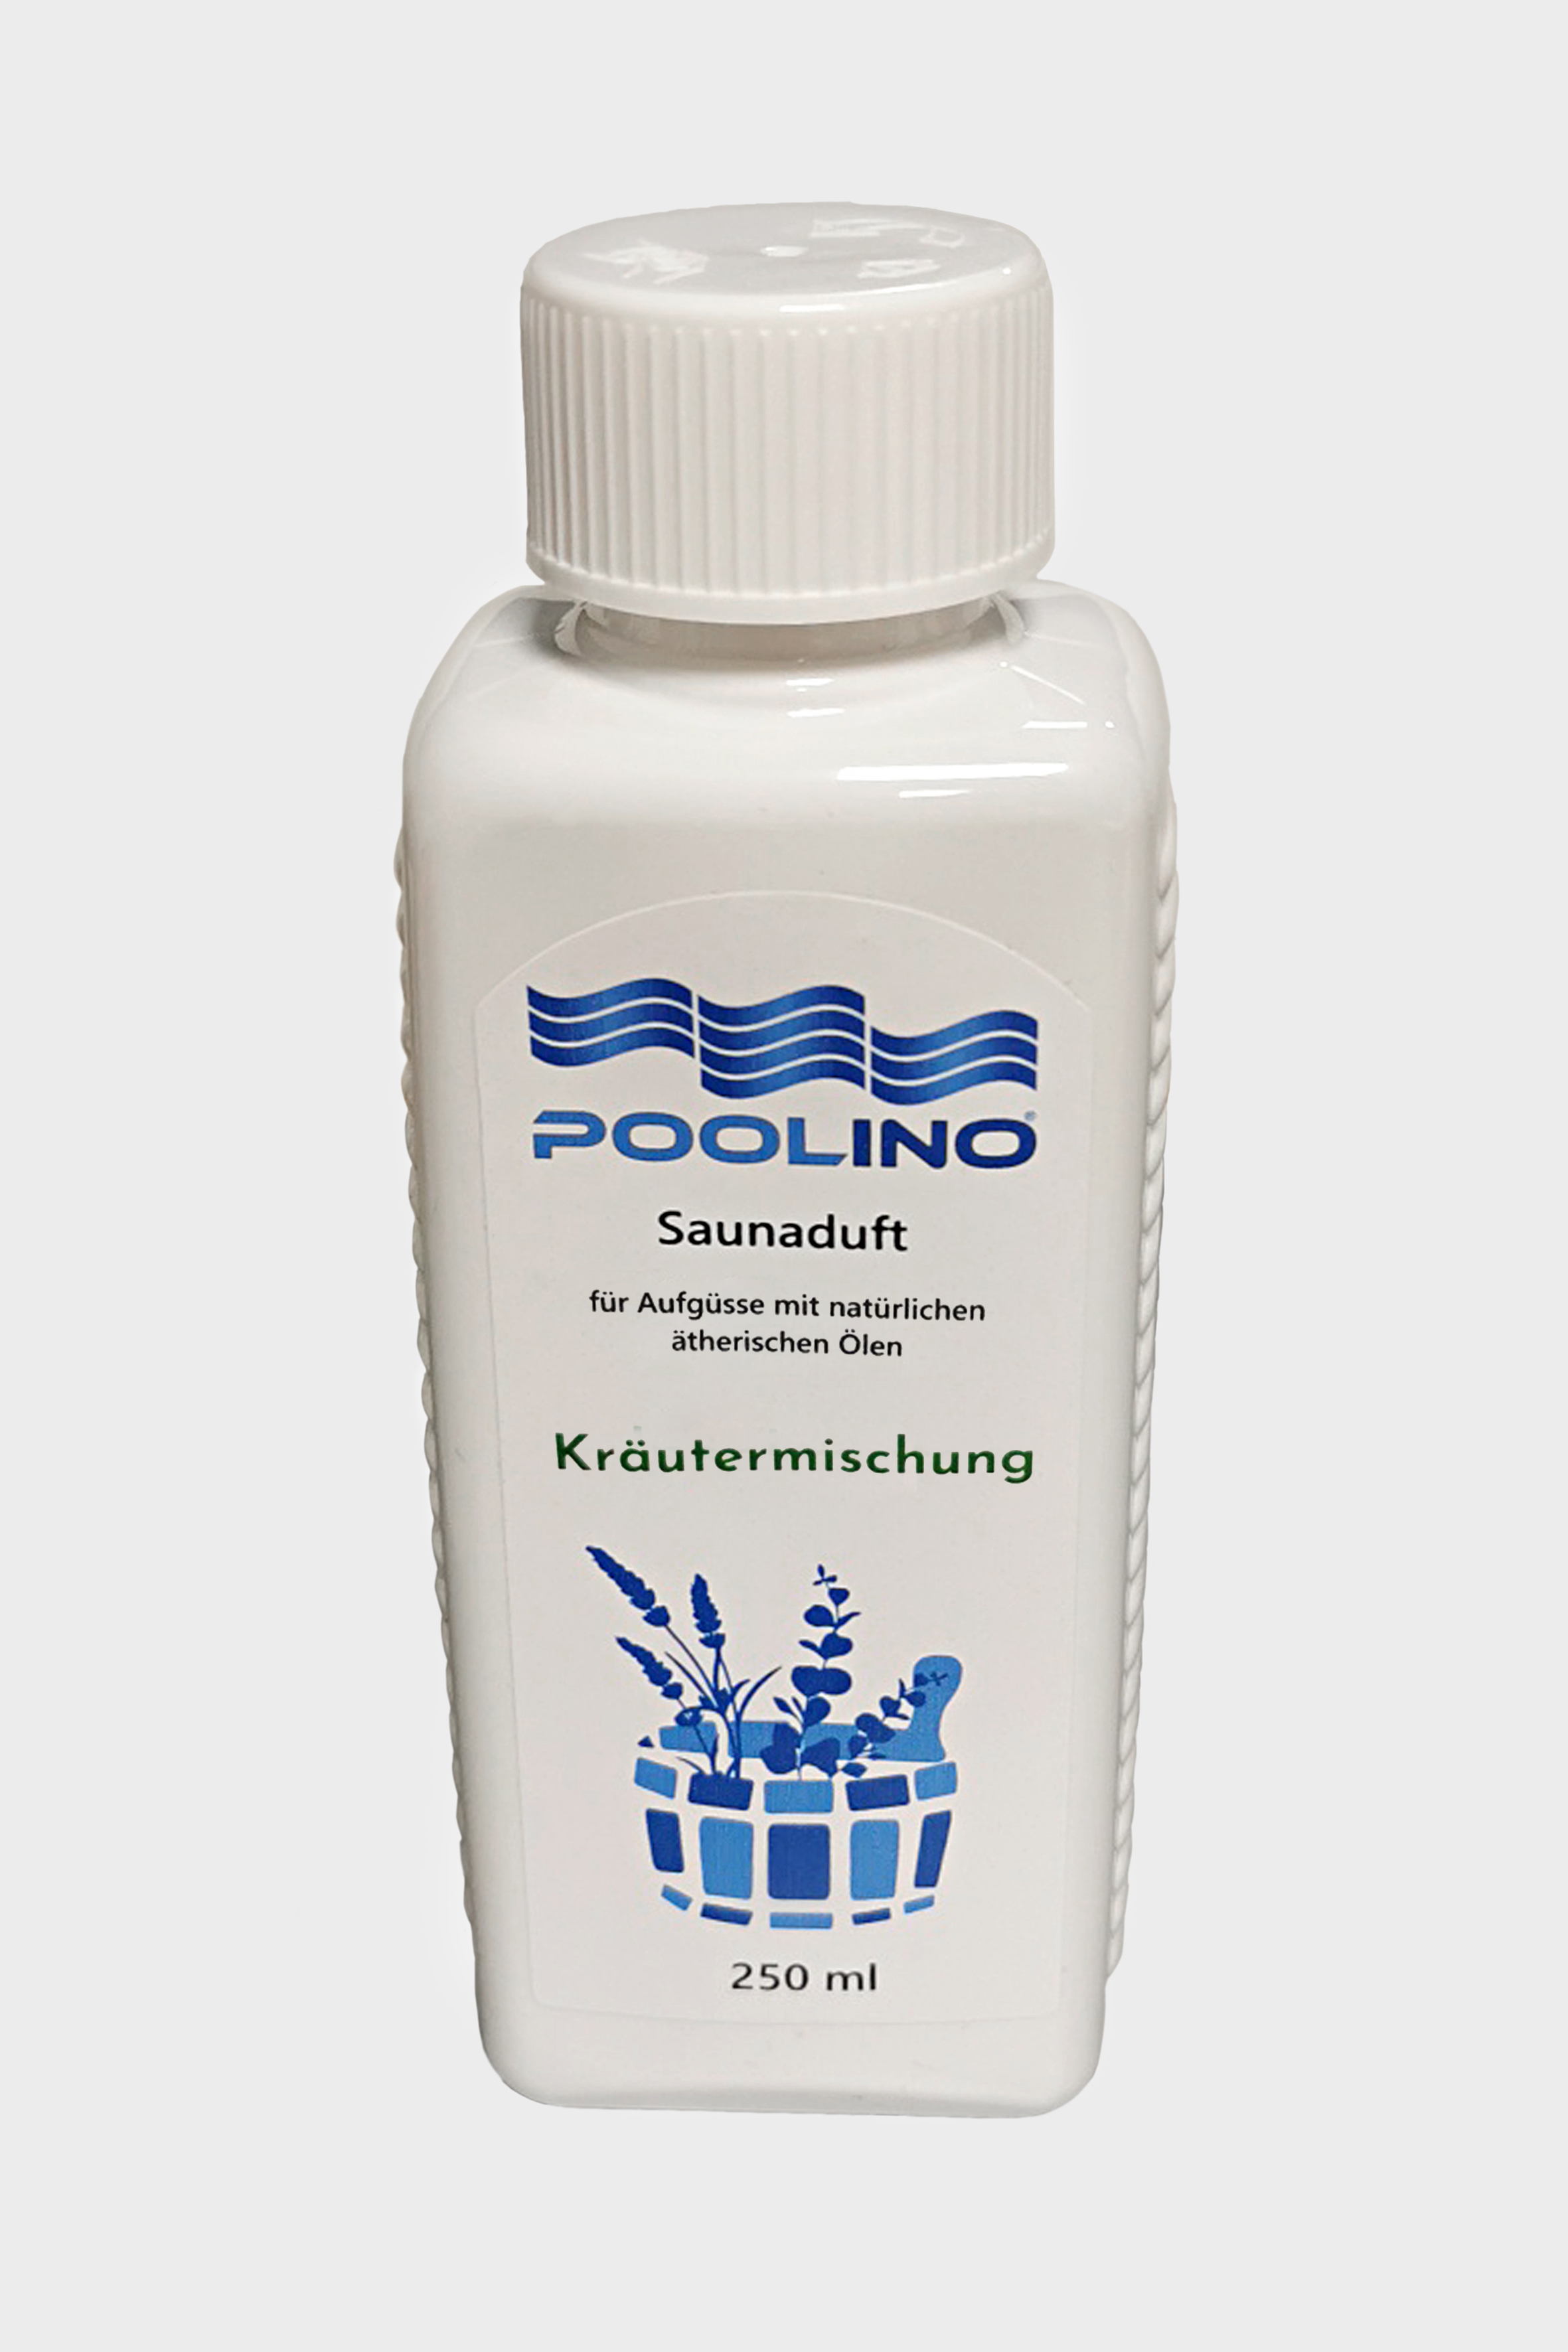 250 ml Poolino® Saunaduft Kräutermischung Aufgusskonzentrat